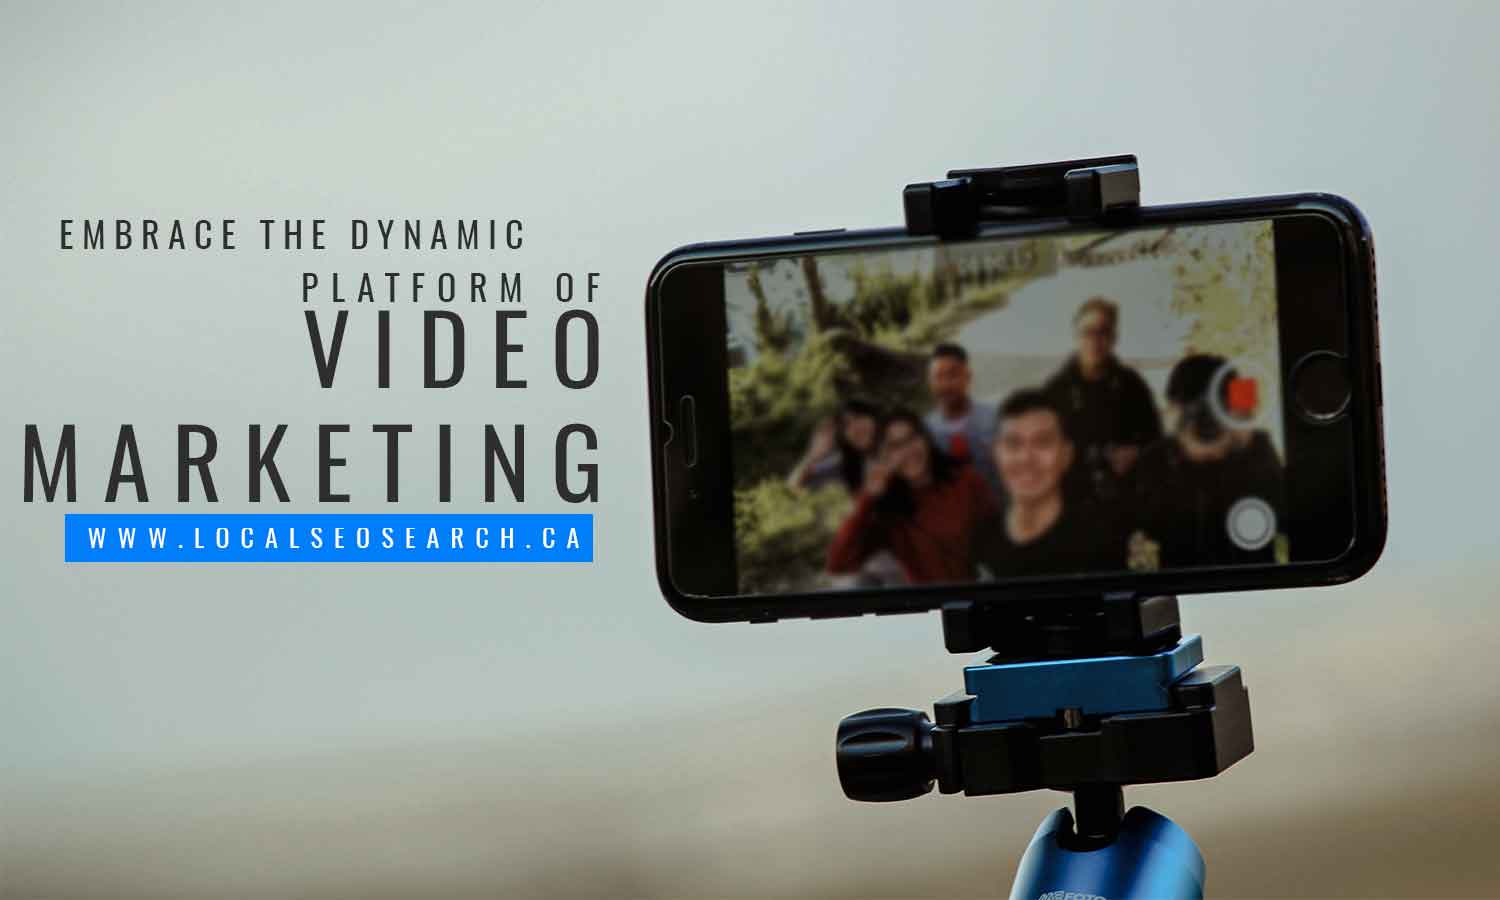 Embrace the dynamic platform of video marketing